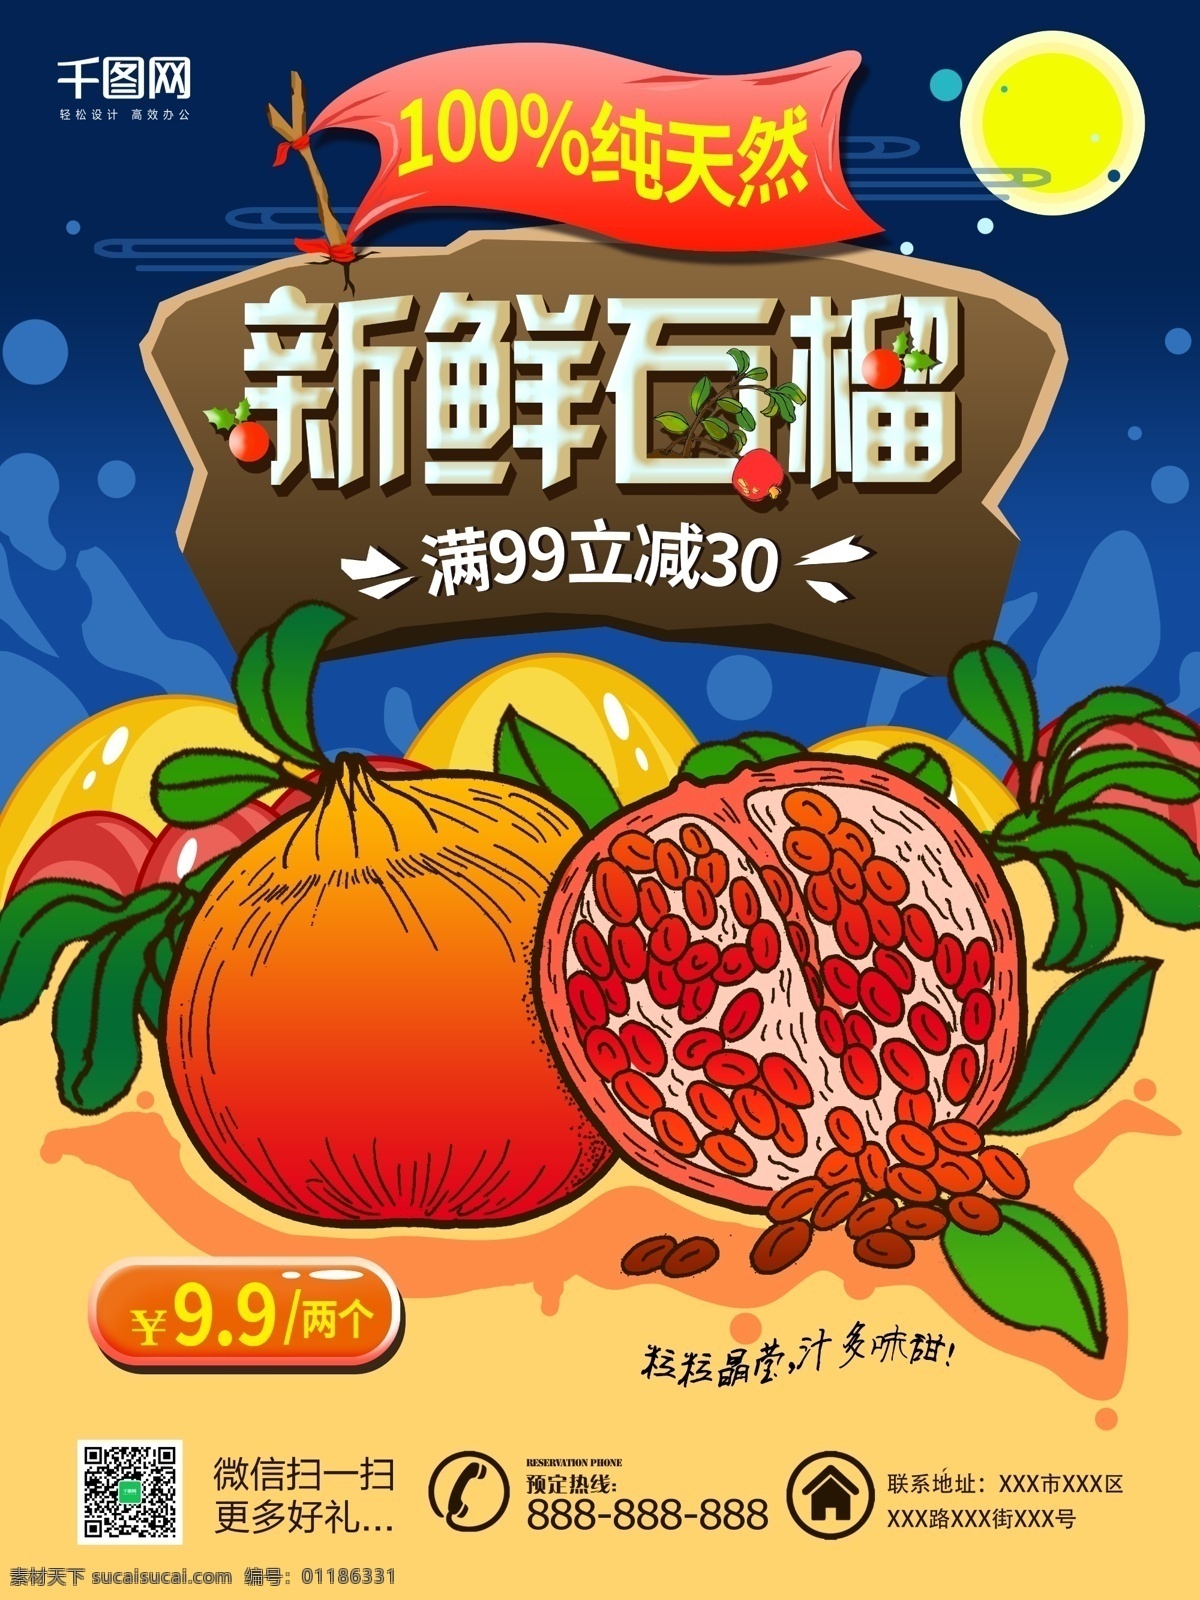 石榴 美食 宣传单 海报 模版 水果 新鲜石榴